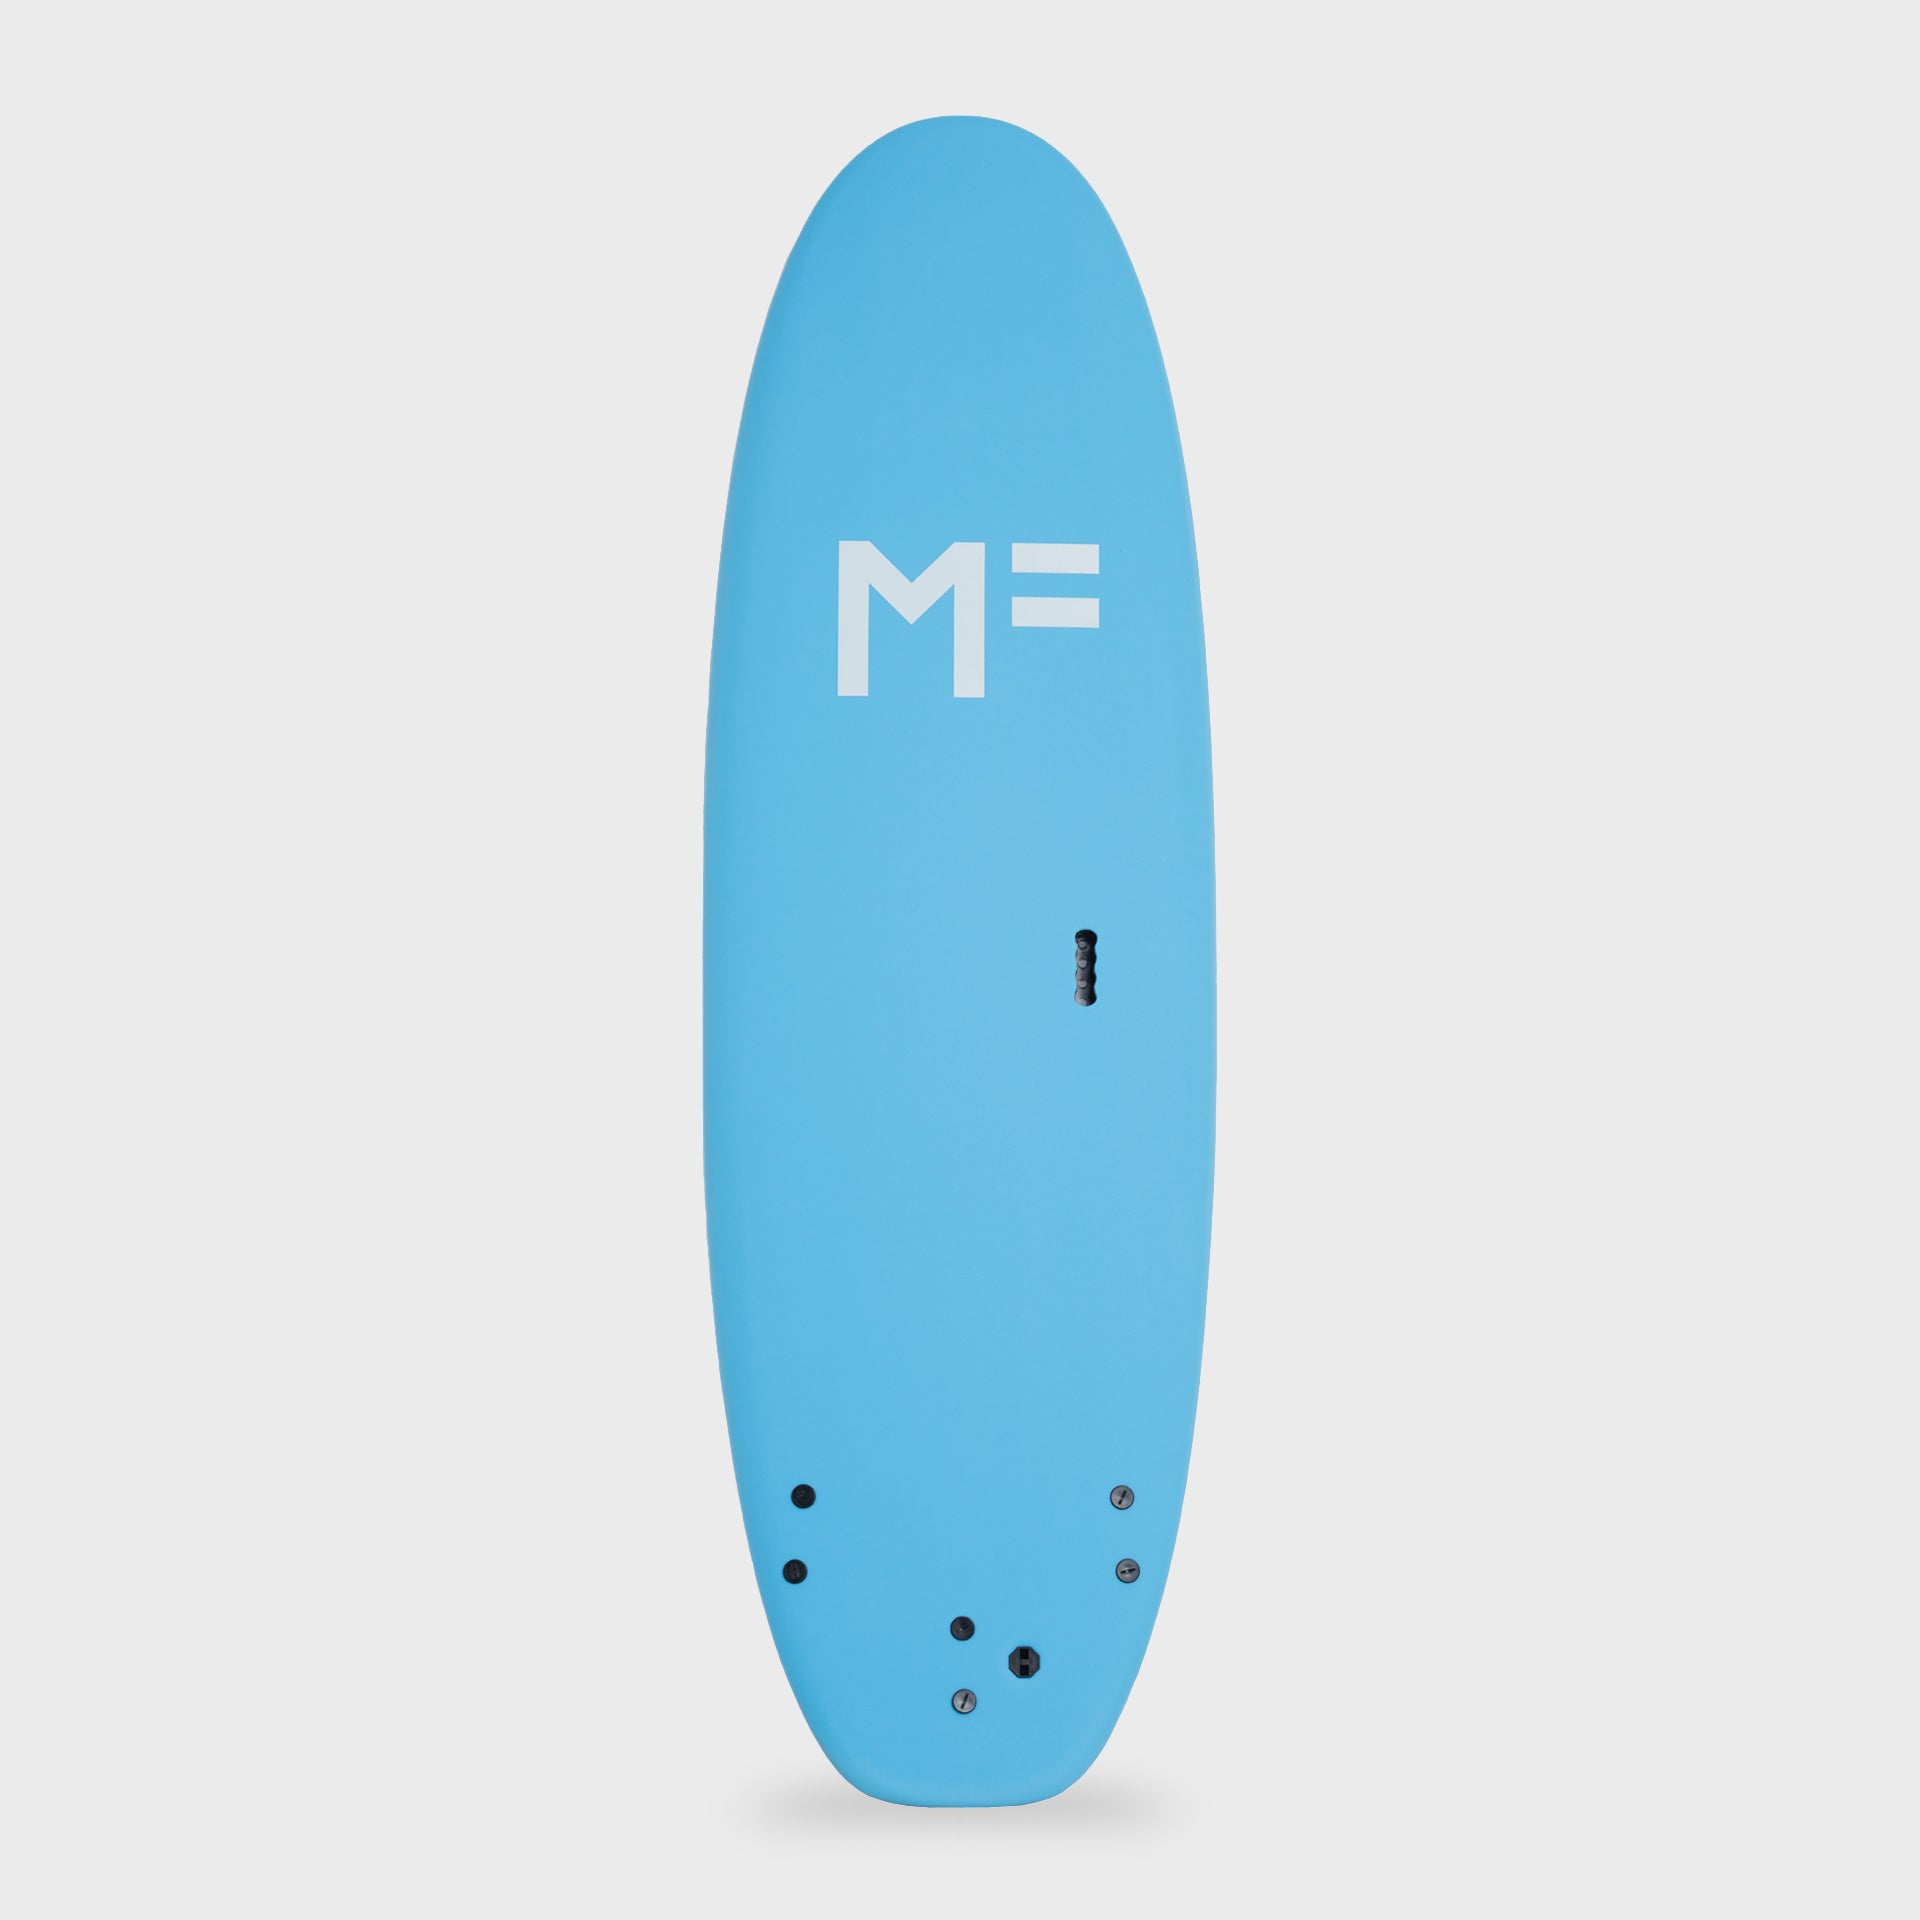 7'6 XL Surf School Surfboard - Screw Thru 3F - Aqua - ManGo Surfing